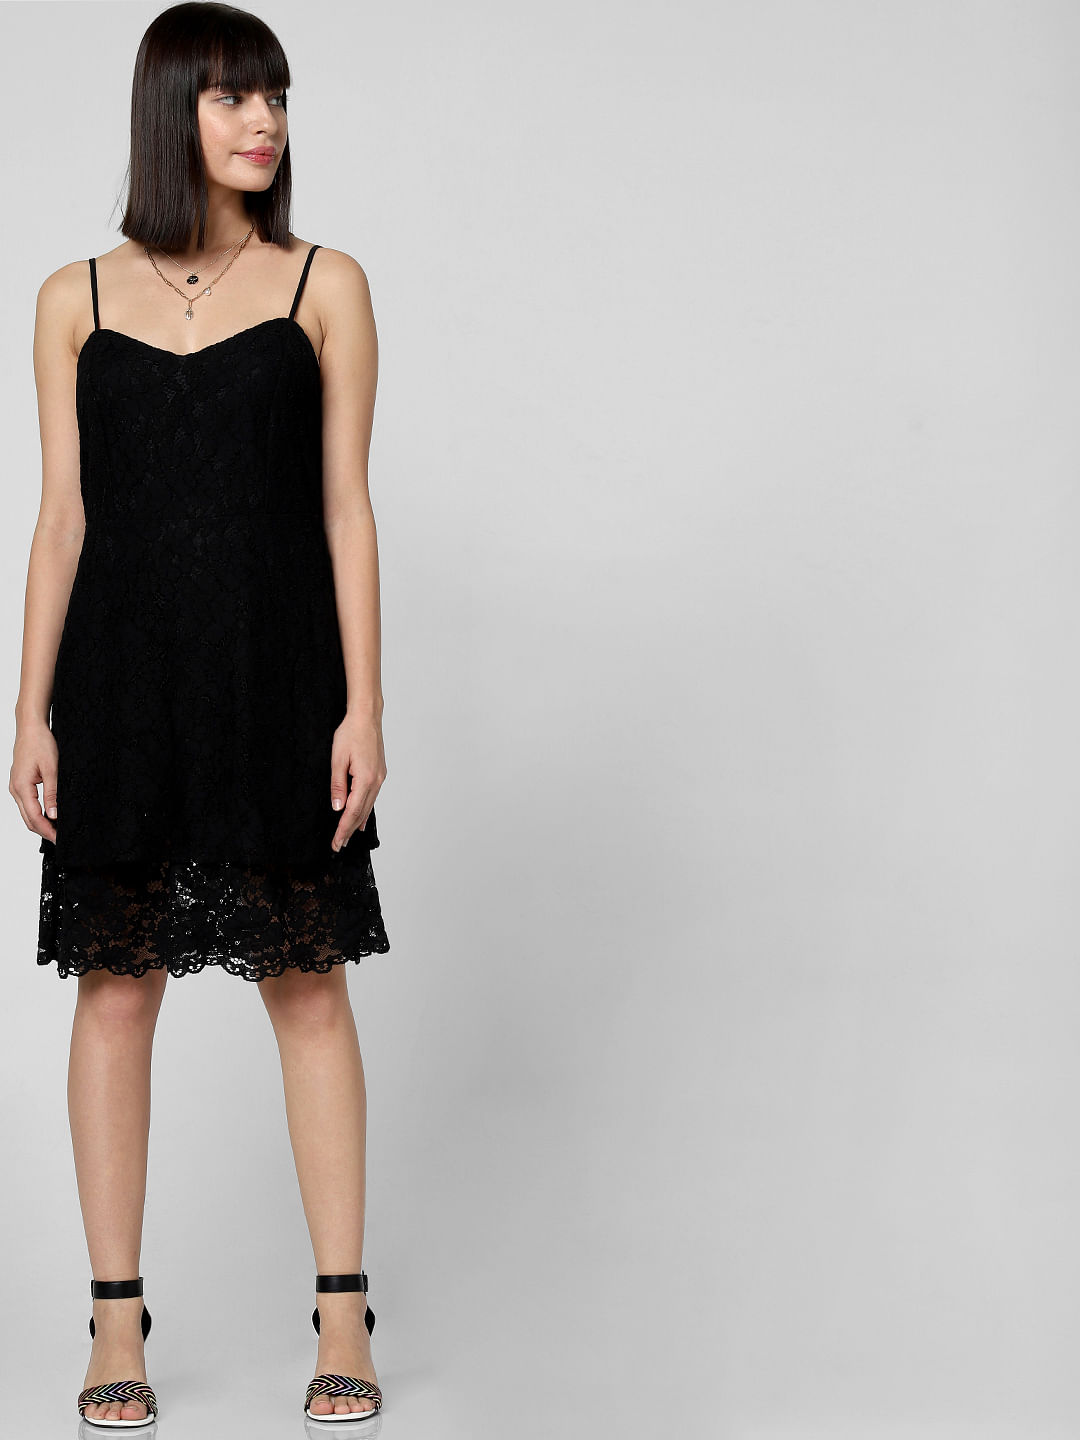 vero moda black lace dress